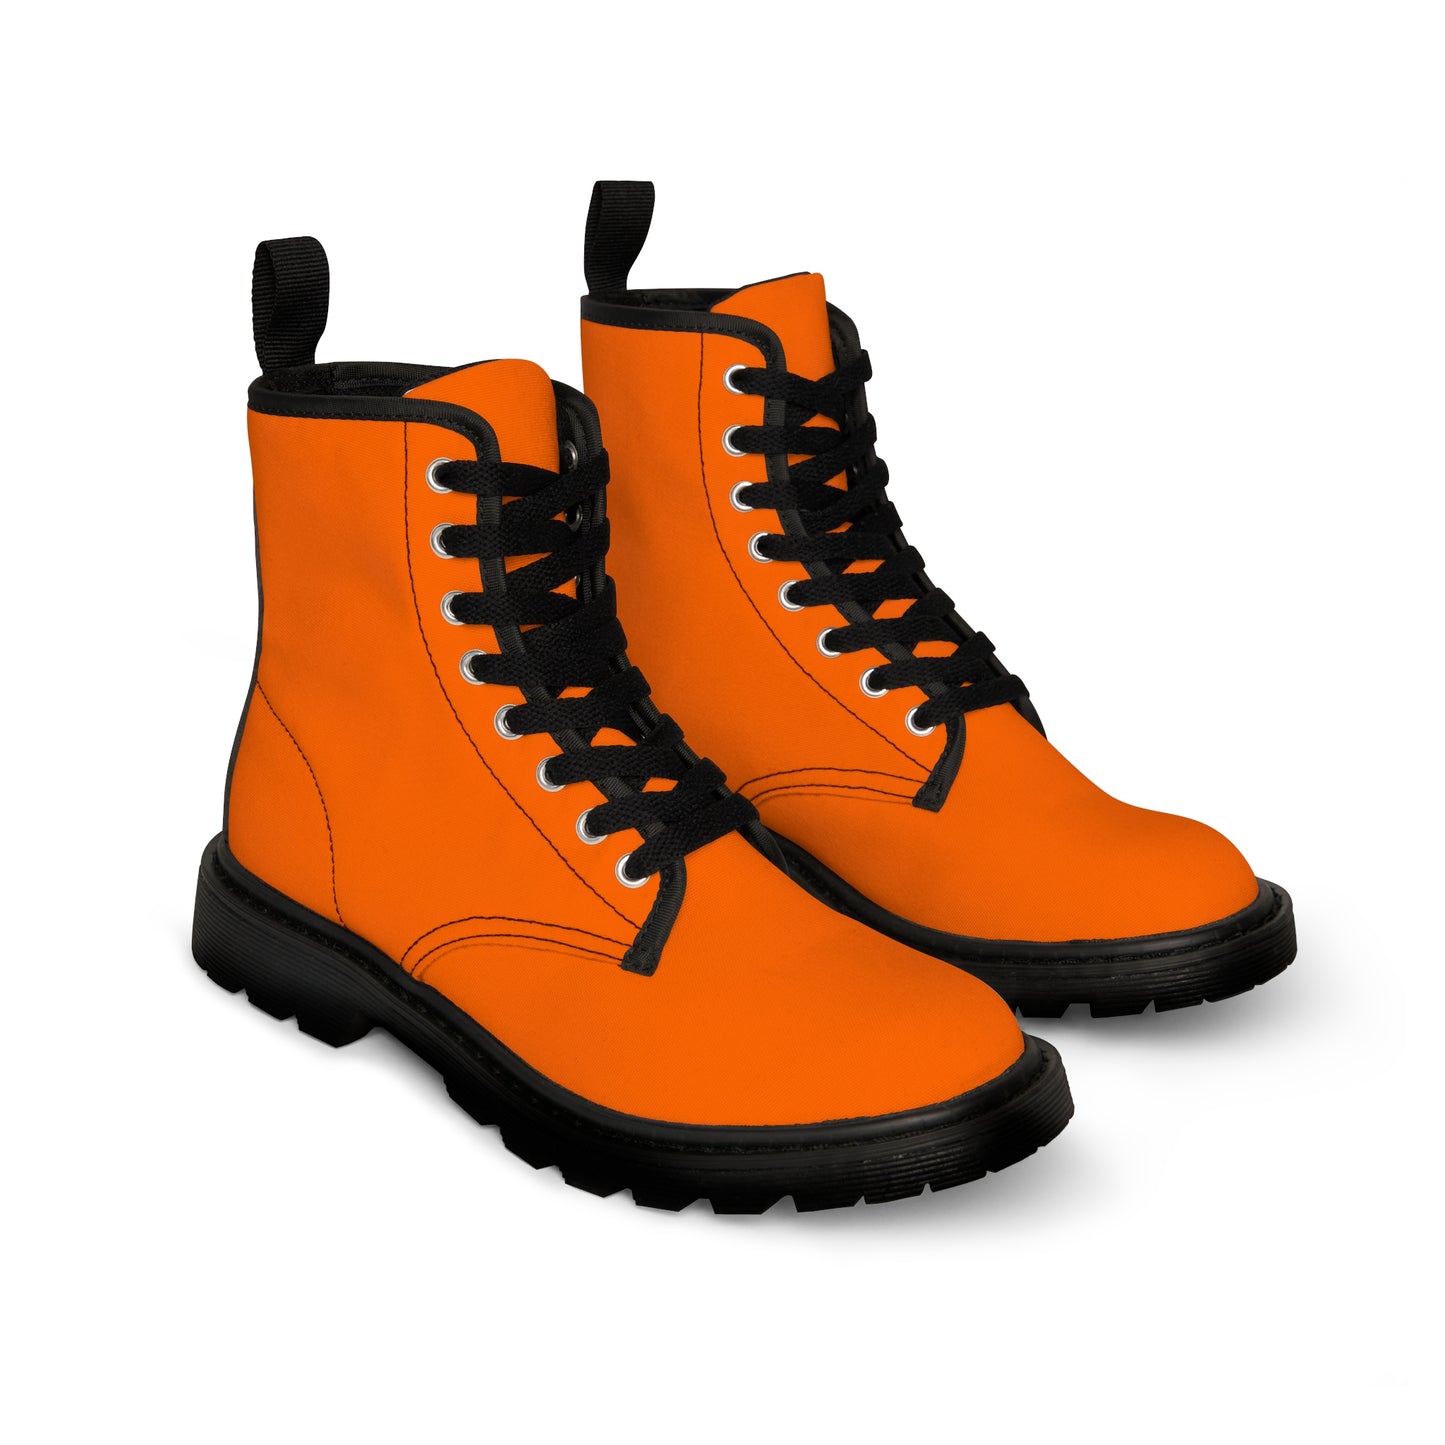 Men's Canvas Boots - Electric Orange US 10.5 Black sole